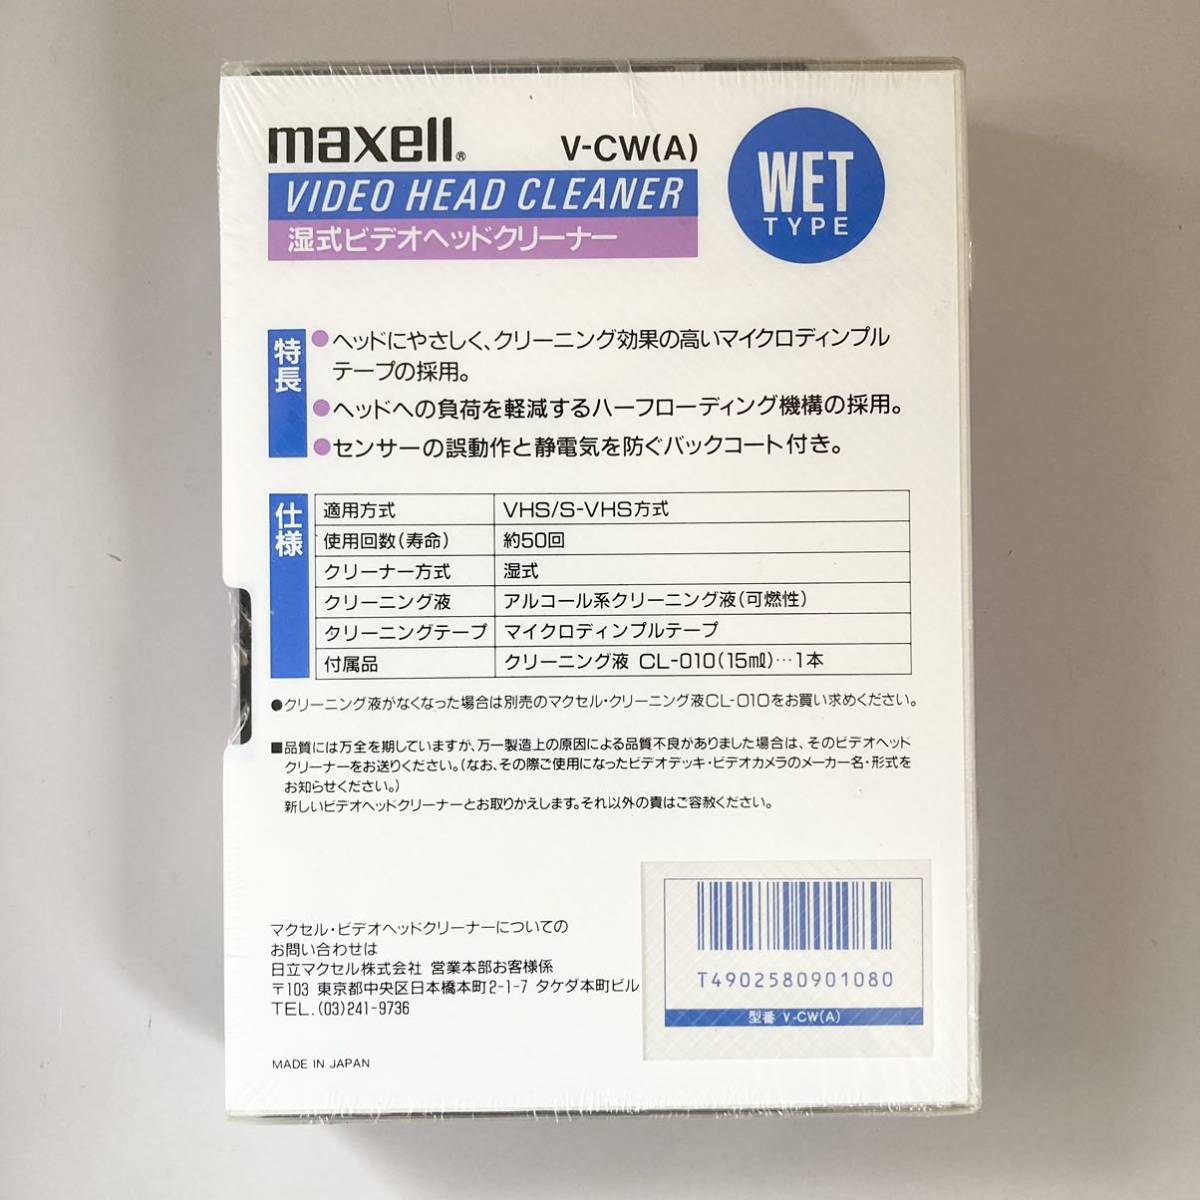 maxell マクセル S-VHS対応 VHS ビデオヘッドクリーナー湿式 V-CW(A)の画像2